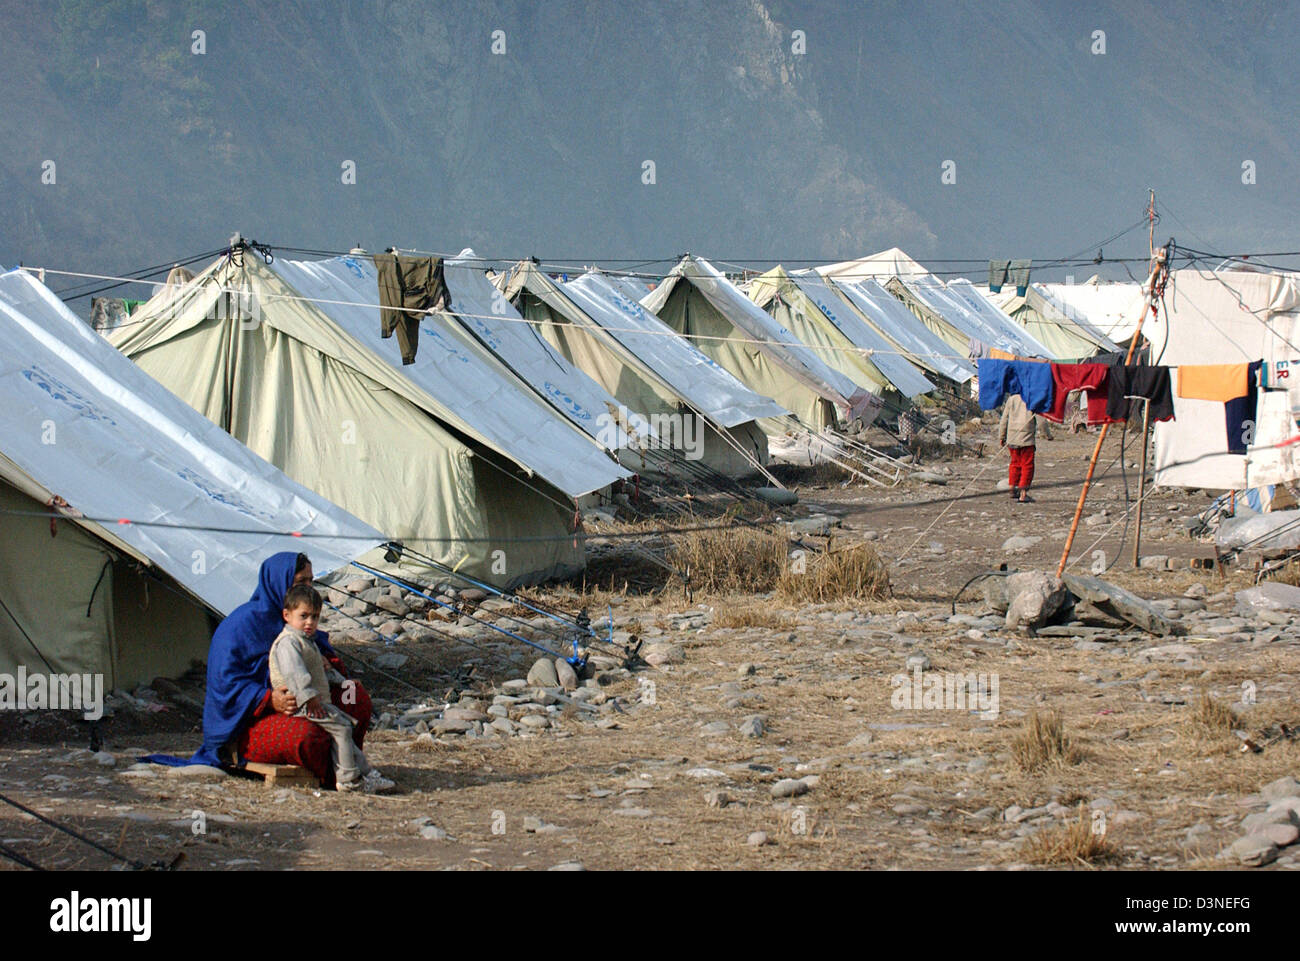 La imagen muestra las hileras de tiendas de campaña en un campamento de refugiados cerca de la ciudad de Muzaffarabad, Pakistán, Martes 31 de enero de 2006. El 08 de octubre de 2006, un terremoto de magnitud 7.6 azotó la región de Cachemira, en el noroeste de Pakistán y mató a 80.000 personas. Tres millones han quedado sin hogar padecido desde el frío invierno. Foto: Wolfgang Langenstrassen Foto de stock